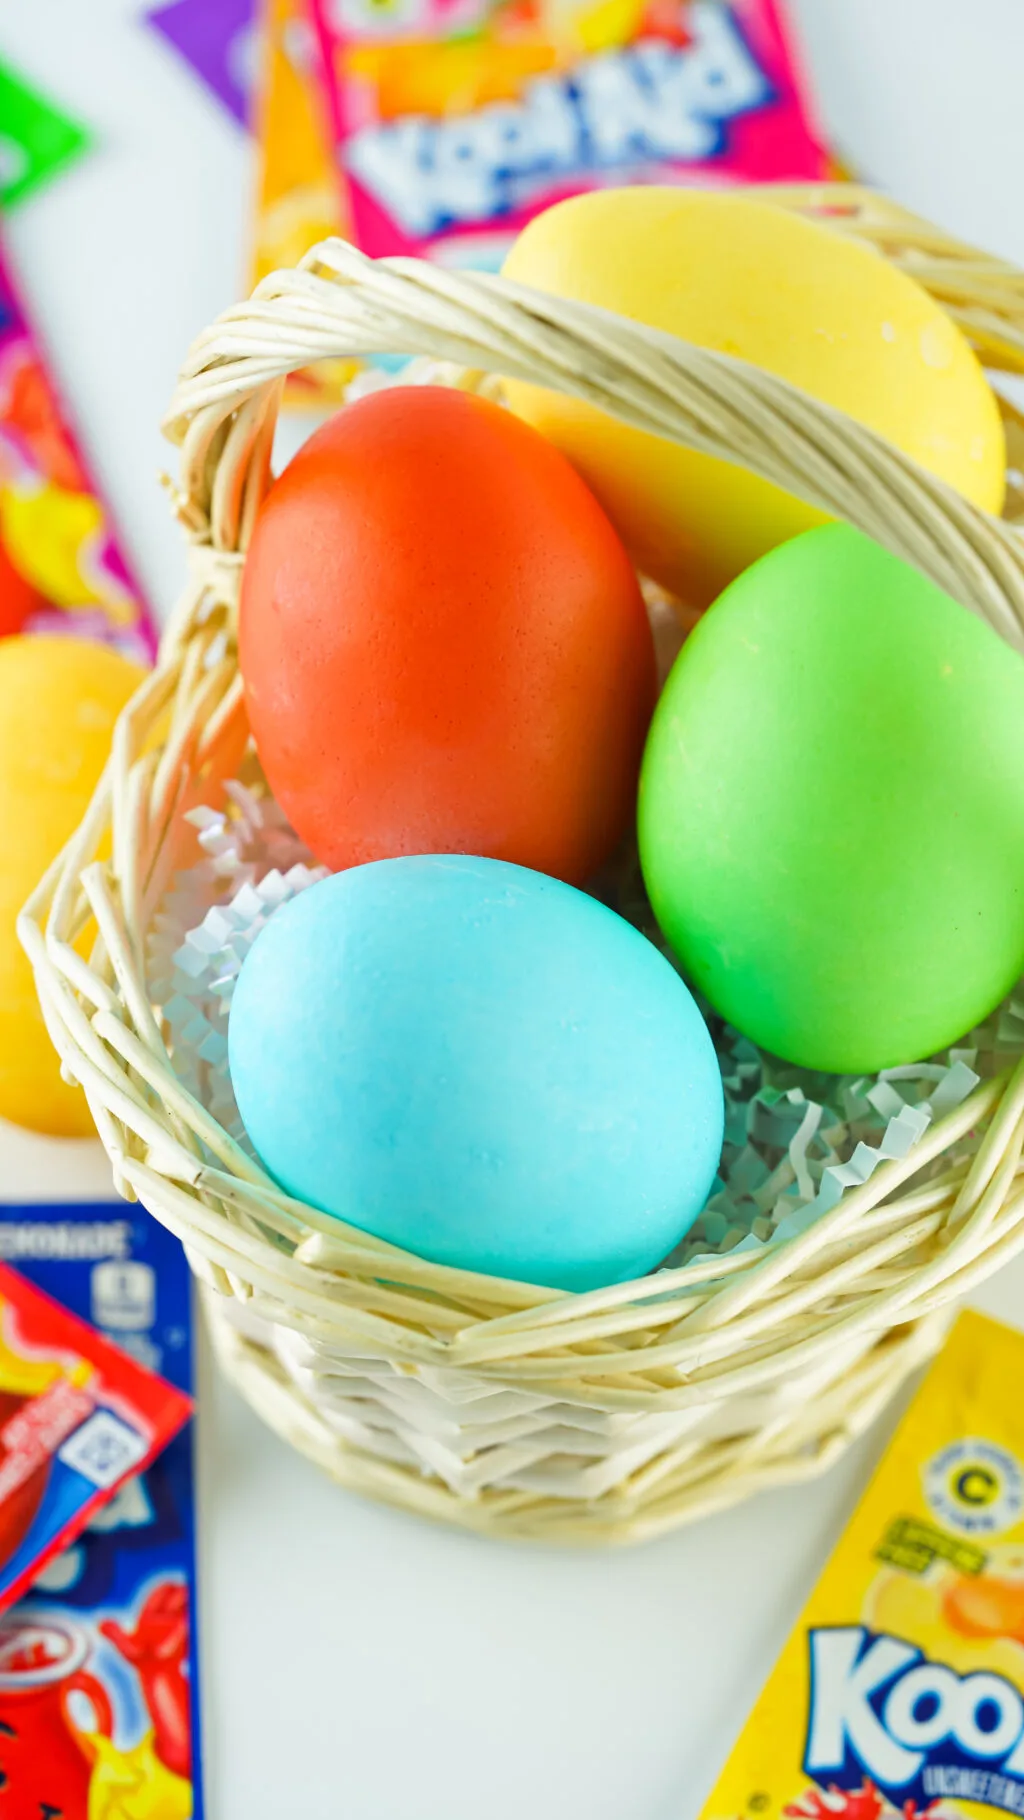 kool-aid dyed eggs in easter basket